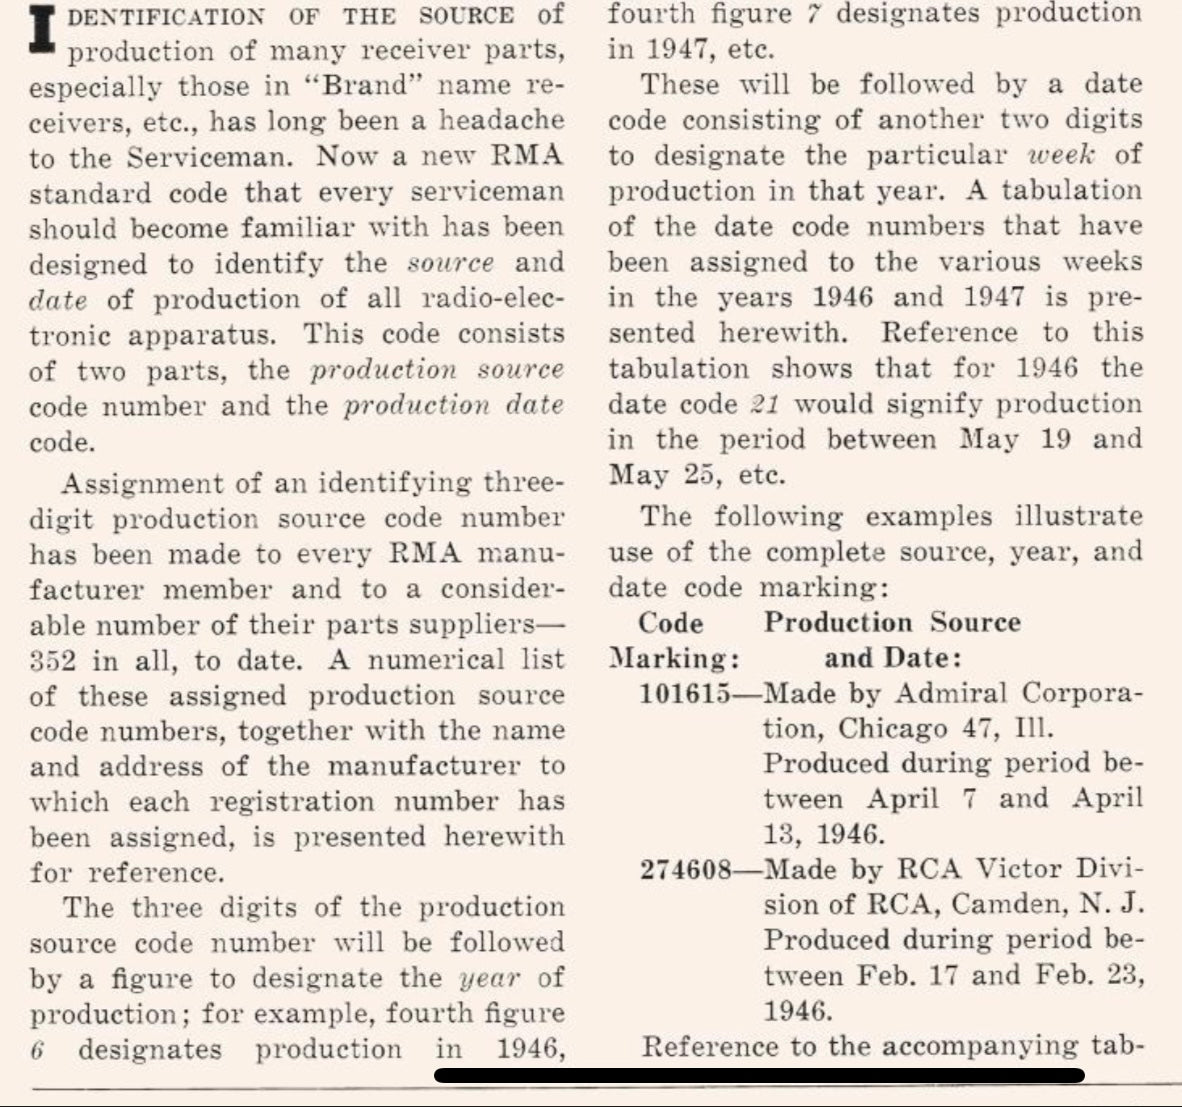 6SN7 GTB SYLVANIA CHROMOBERTEIL Schwarze Platten Passende Rohre Hergestellt in den USA '47